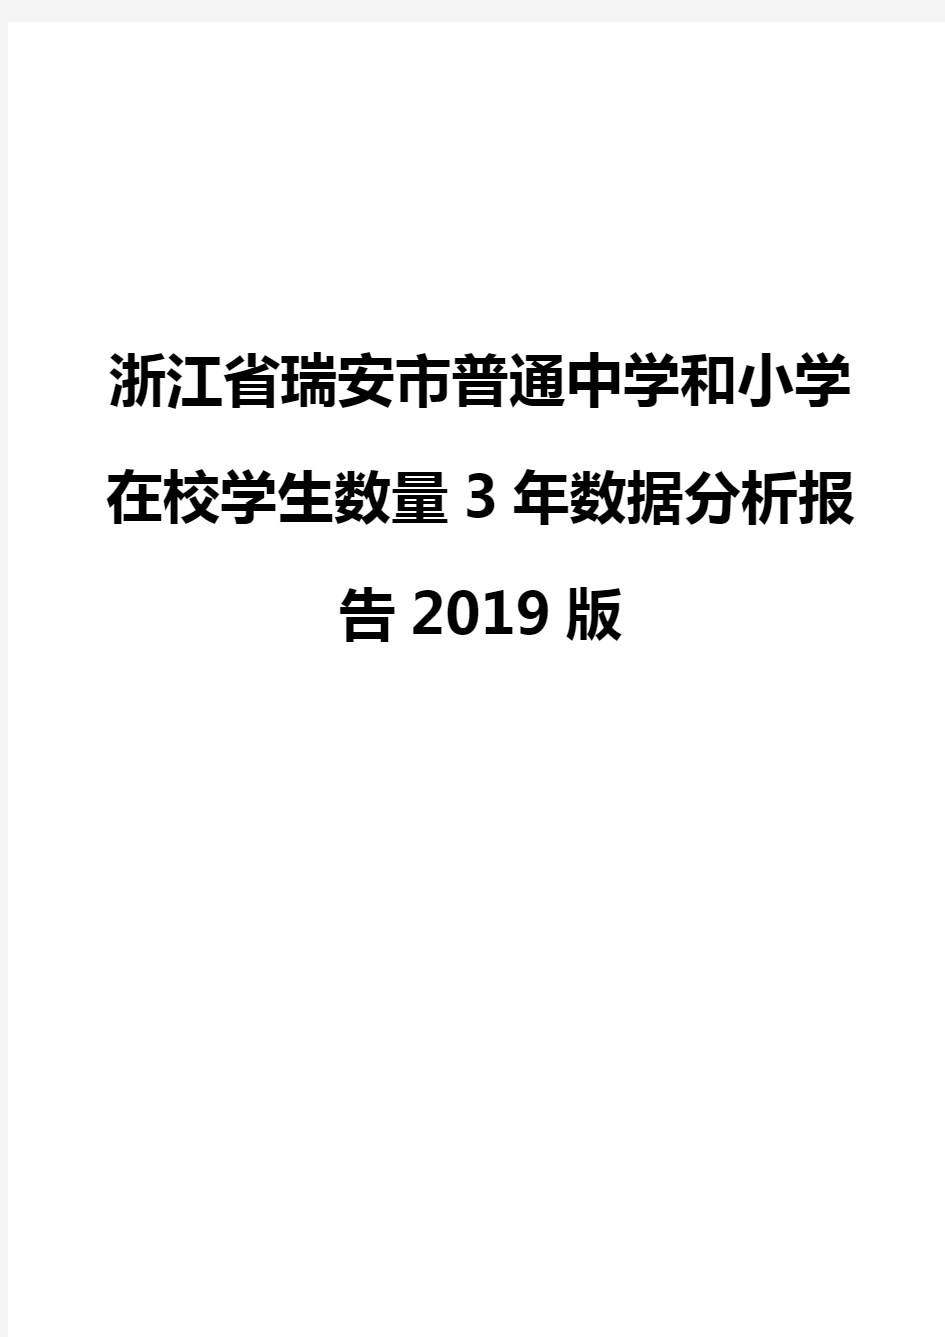 浙江省瑞安市普通中学和小学在校学生数量3年数据分析报告2019版